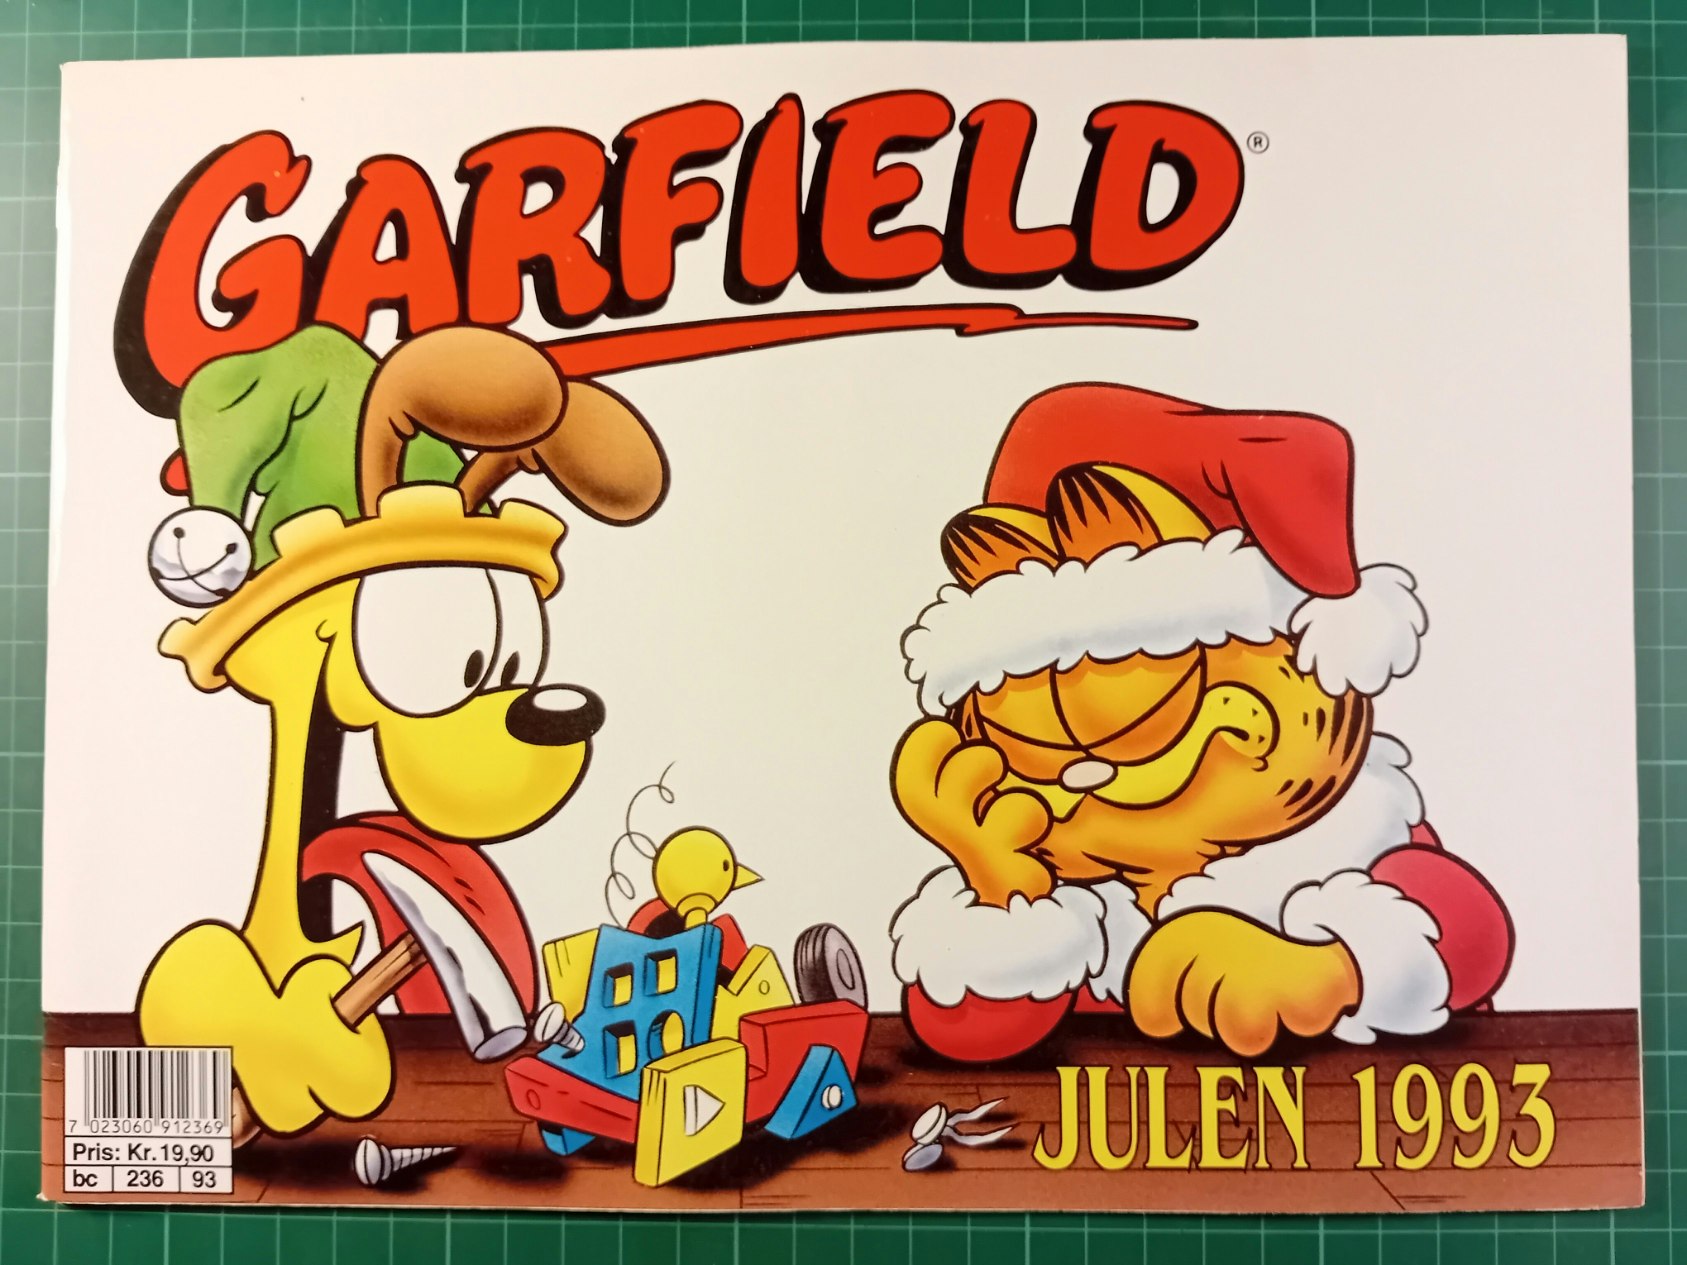 Pusur Julen 1993 (Garfield)